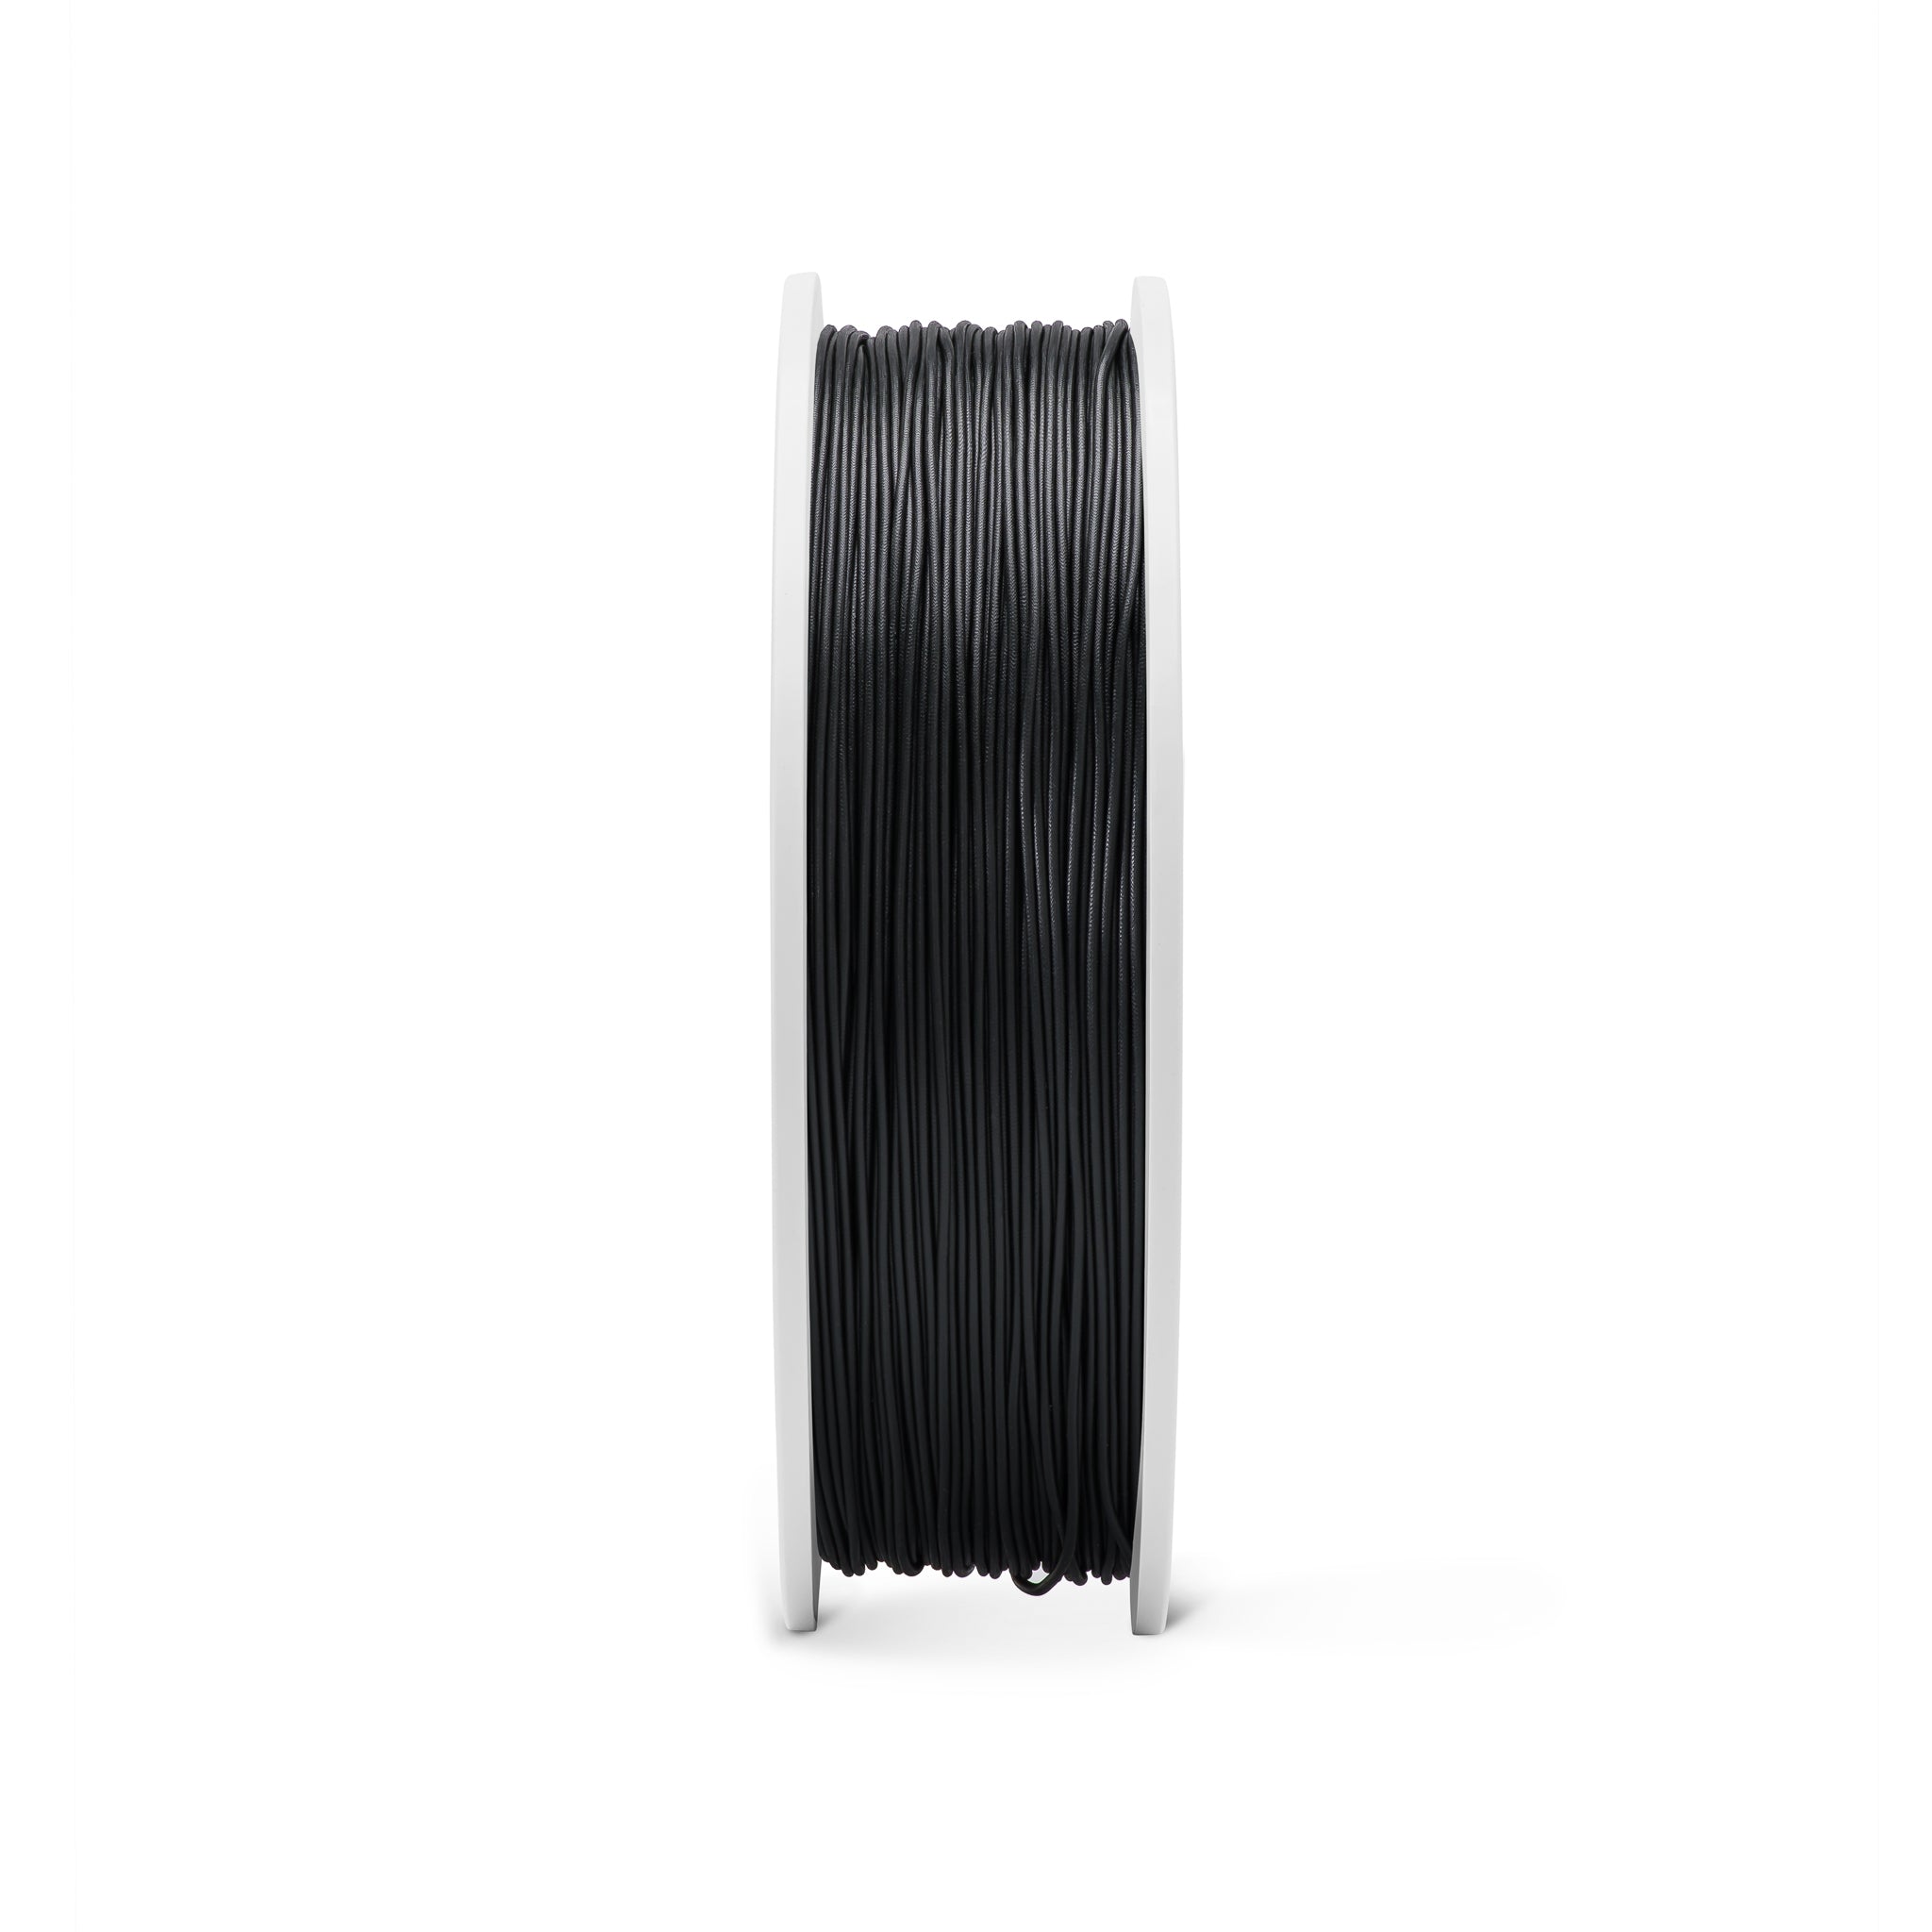 Fiberlogy FIBERFLEX 40D - Black [1.75mm] (59,80€/Kg)